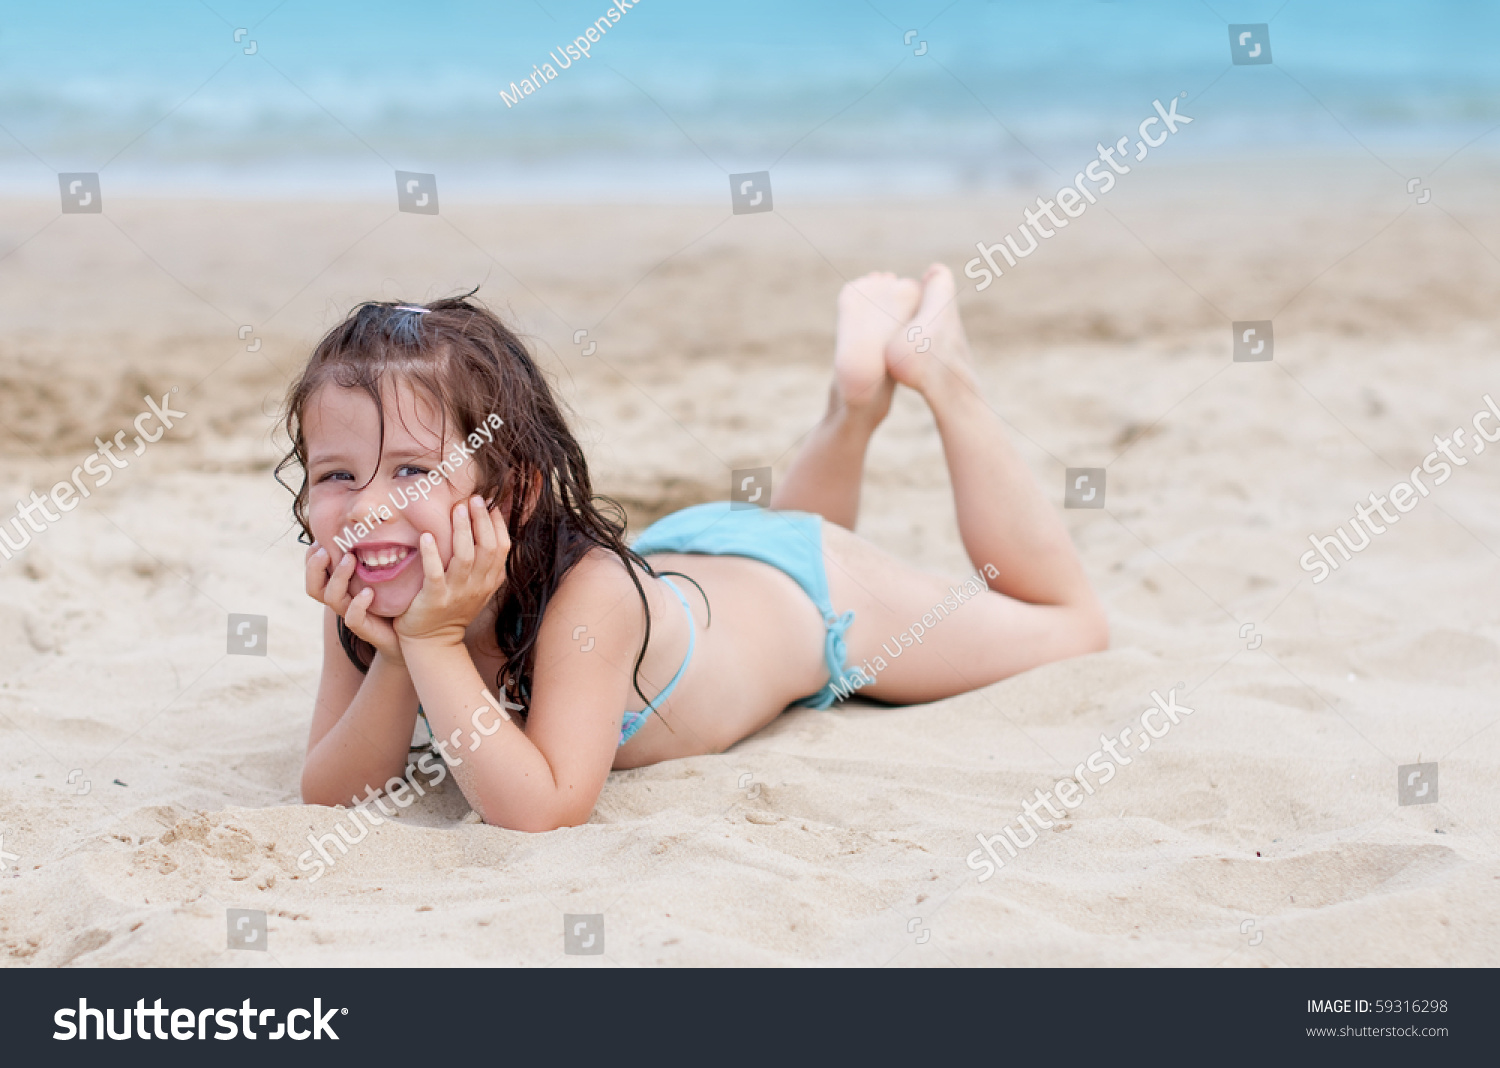 lying on the beach